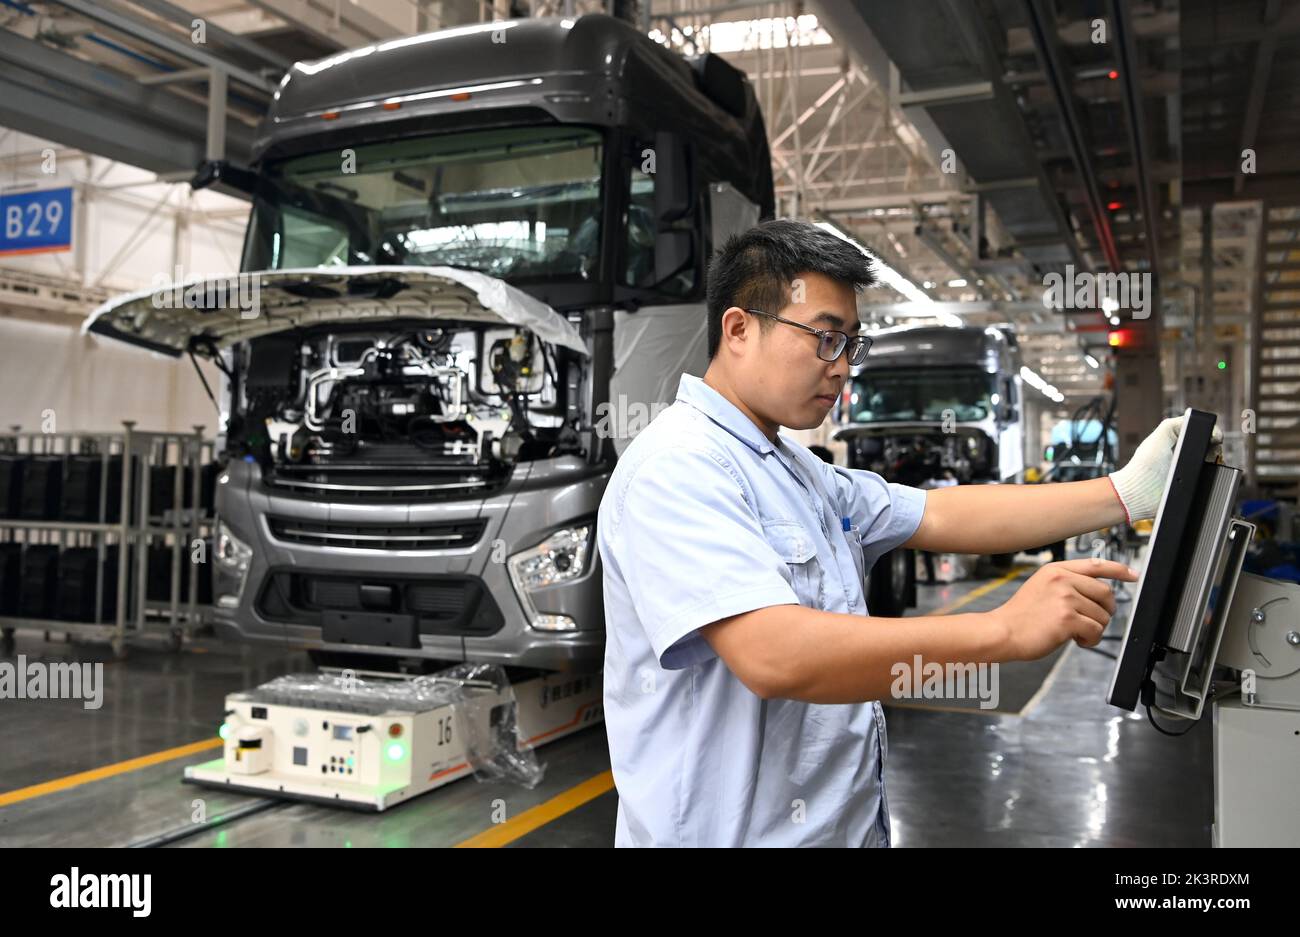 (220928) -- XI'AN, 28 de septiembre de 2022 (Xinhua) -- Un empleado trabaja en la línea de montaje del proyecto de expansión de la capacidad de camiones pesados en el Shaanxi Automobile Holding Group en Xi'an, provincia de Shaanxi, noroeste de China, 27 de septiembre de 2022. Shaanxi Automobile Holding Group es una empresa líder en la fabricación de equipos en la provincia de Shaanxi. Desde el principio de este año, las órdenes extranjeras de Shaanxi Automobile han continuado creciendo. Los camiones pesados que se producen aquí se exportan a más de 130 países y regiones. Recientemente se ha puesto en producción un proyecto de expansión para aumentar la capacidad Foto de stock